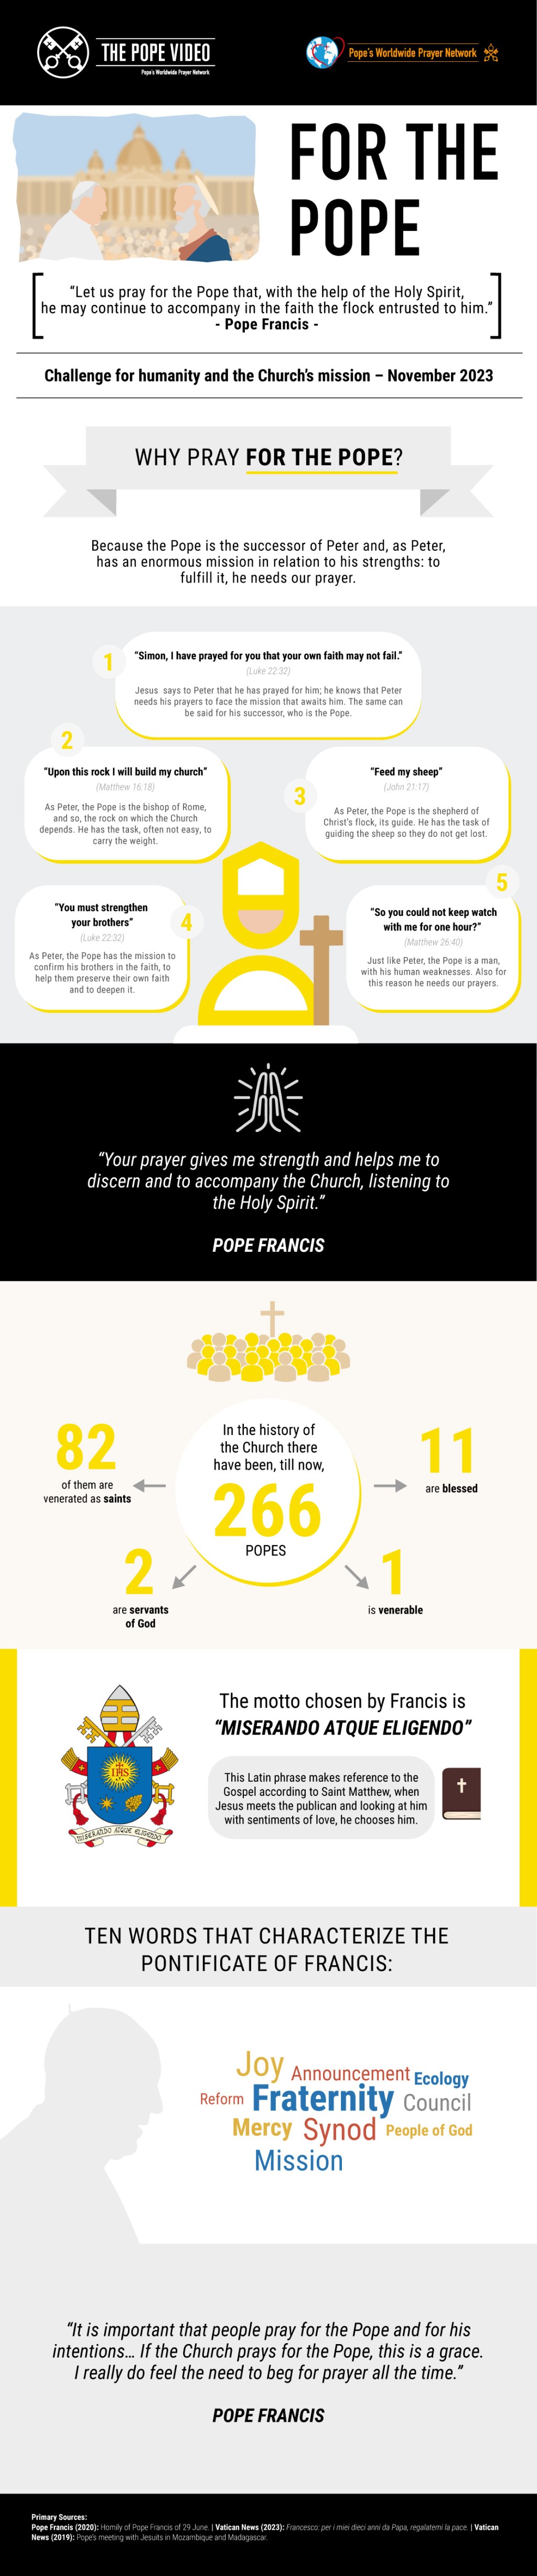 Infographic-TPV-11-2023-EN-For-the-Pope.jpg